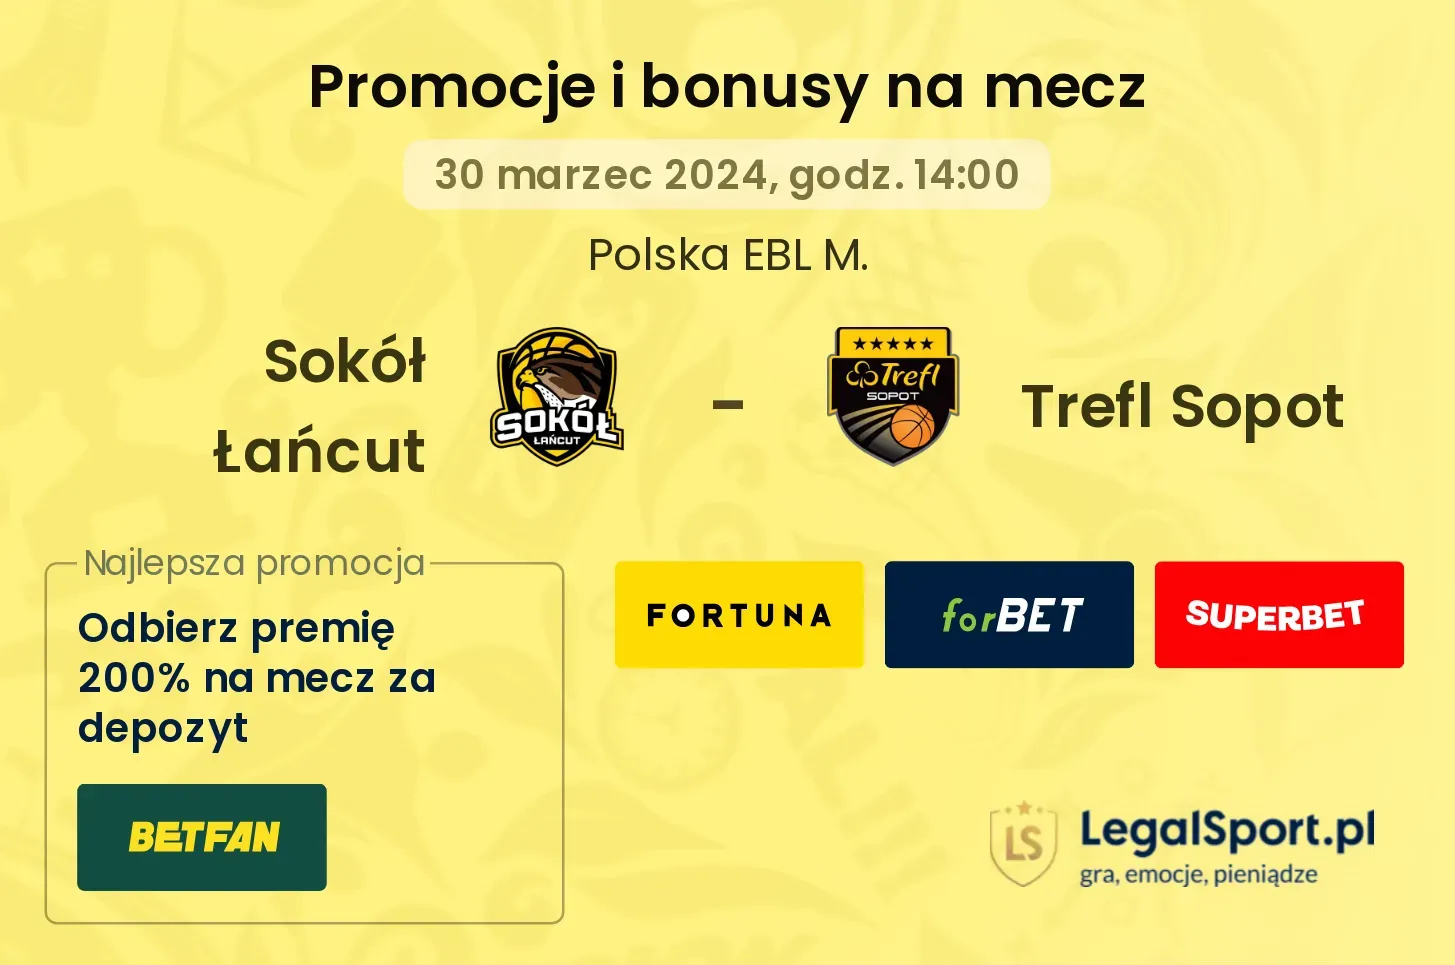 Sokół Łańcut - Trefl Sopot promocje bonusy na mecz